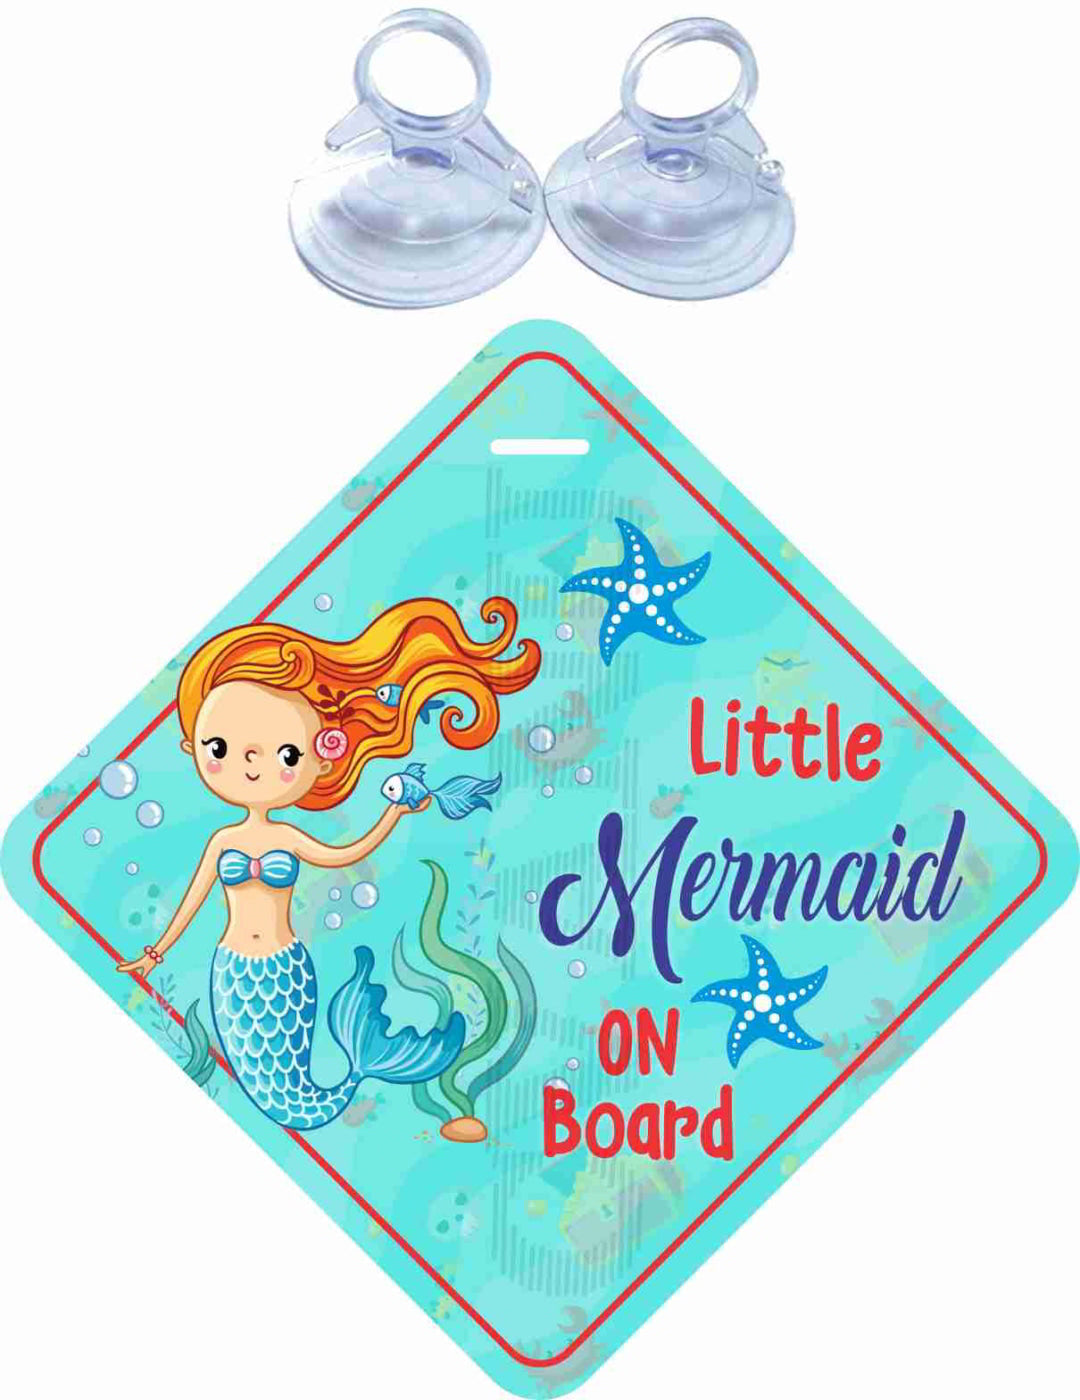 Little Mermaid on Board Warning Safety Sticker